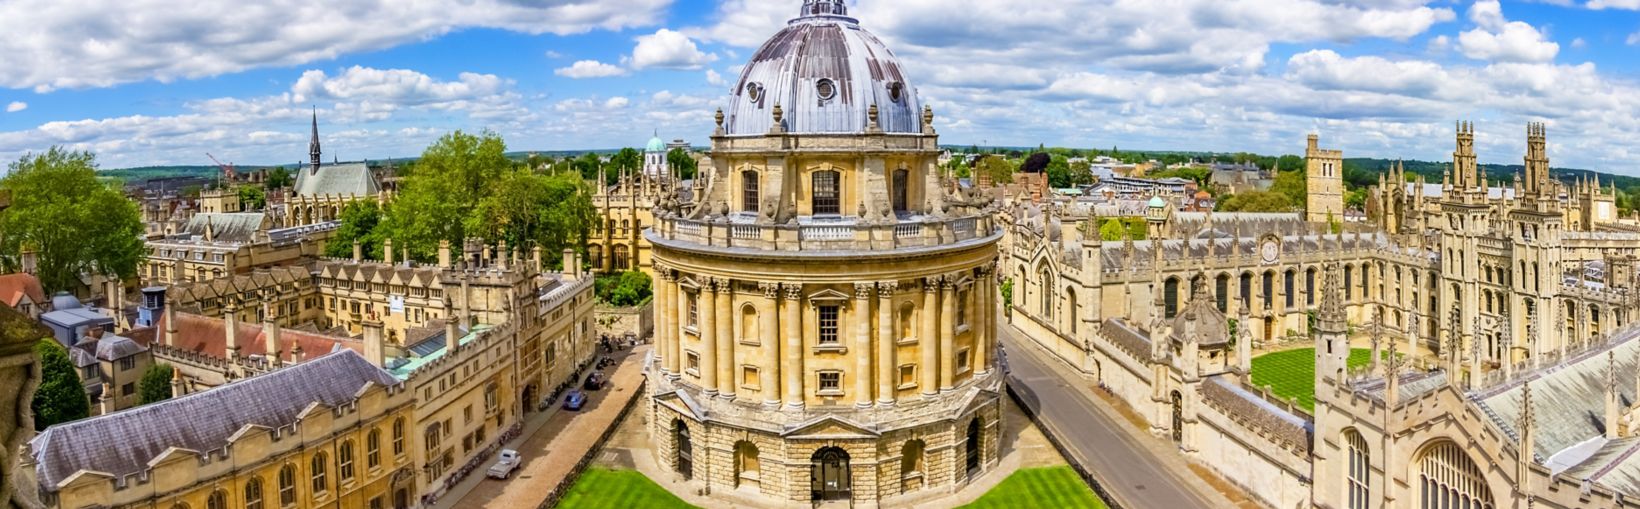 Strade di Oxford-landmark, Inghilterra - panoramica dalla torre di una chiesa con la Bodleian Library e l'All Souls College